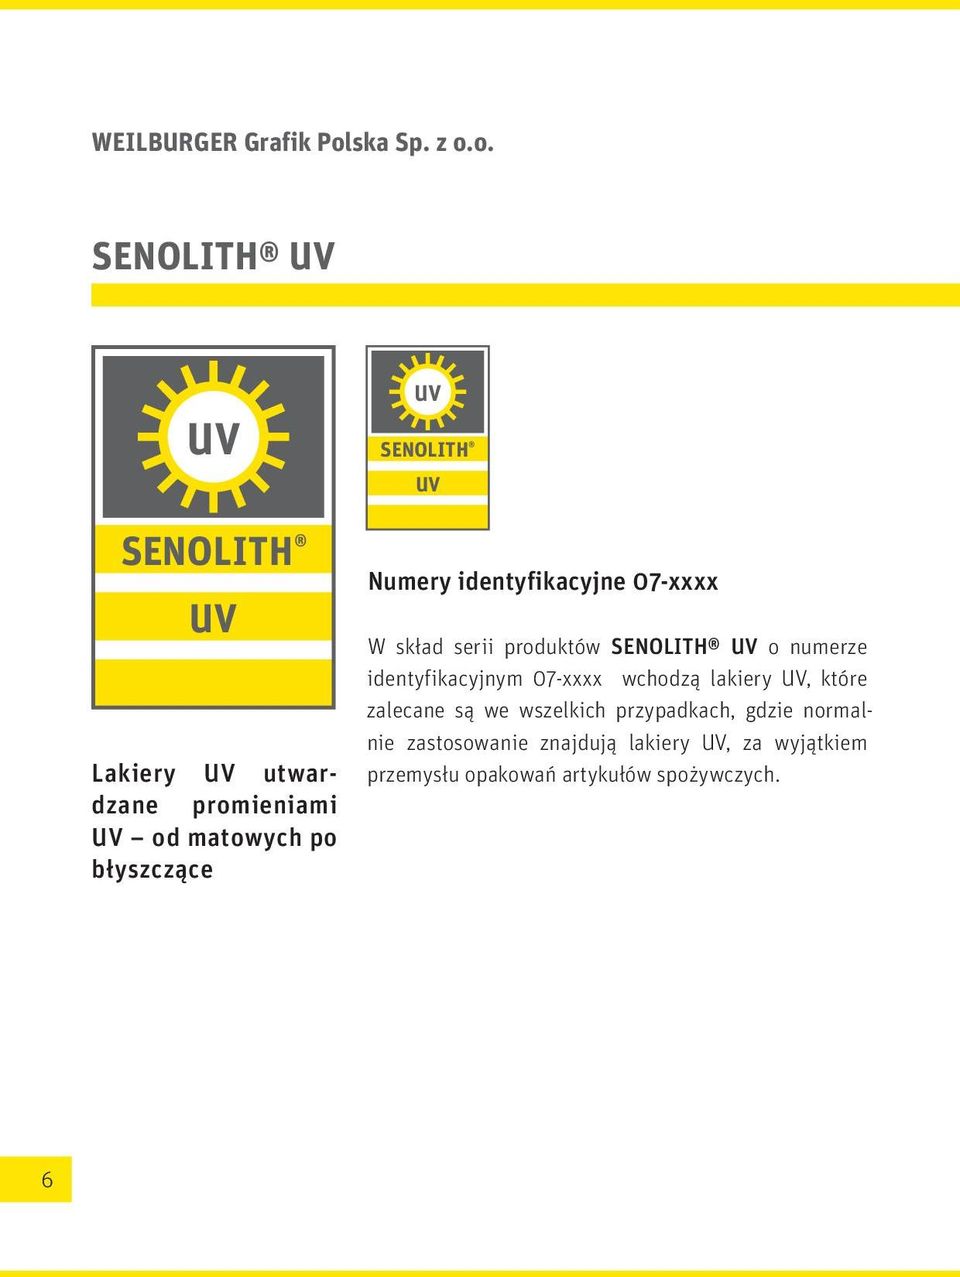 o. SENOLITH UV UV UV SENOLITH UV SENOLITH UV Lakiery UV utwardzane promieniami UV od matowych po